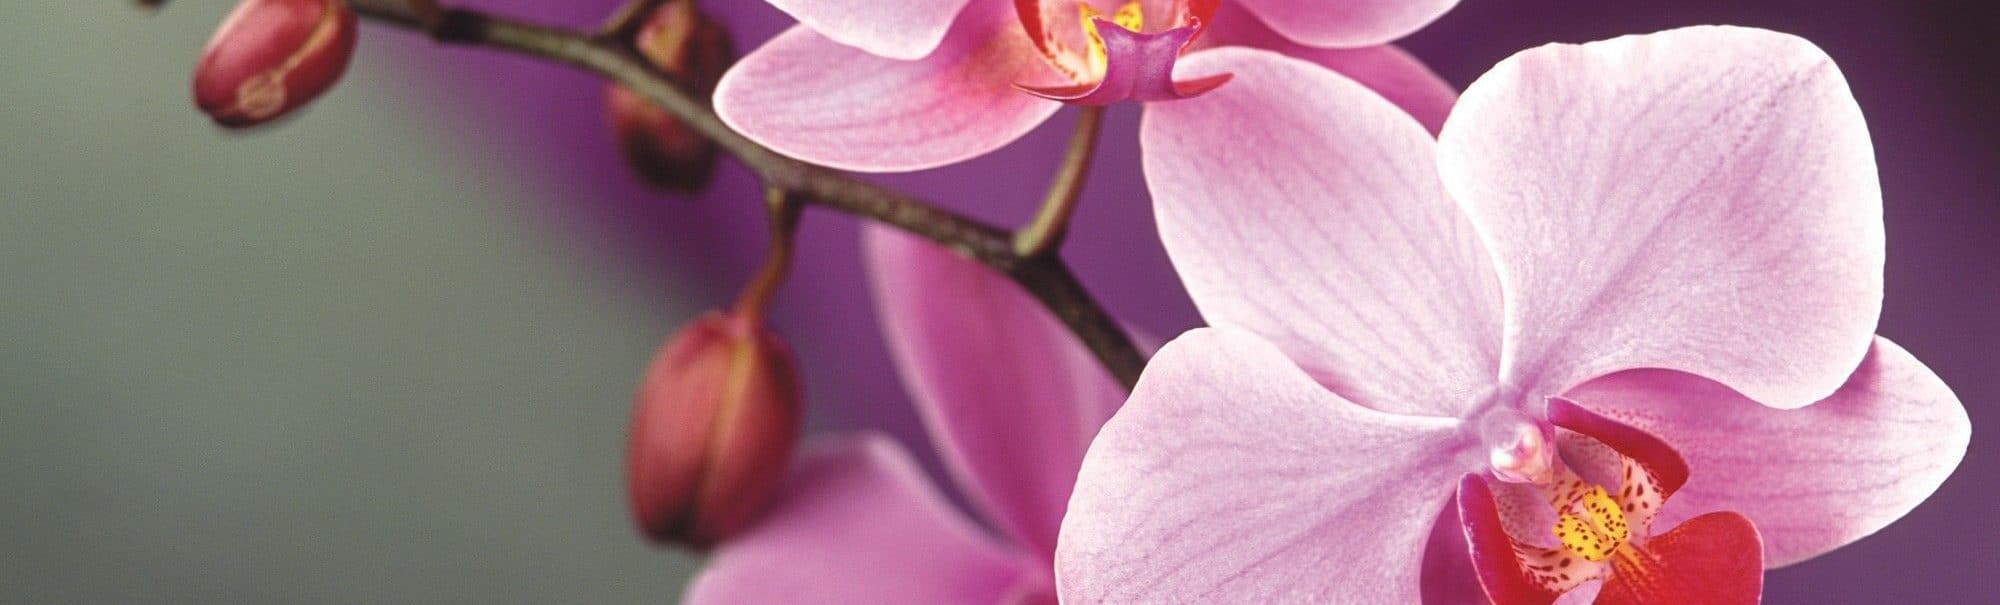 Можно ли пересаживать цветущую орхидею: пошаговая инструкция